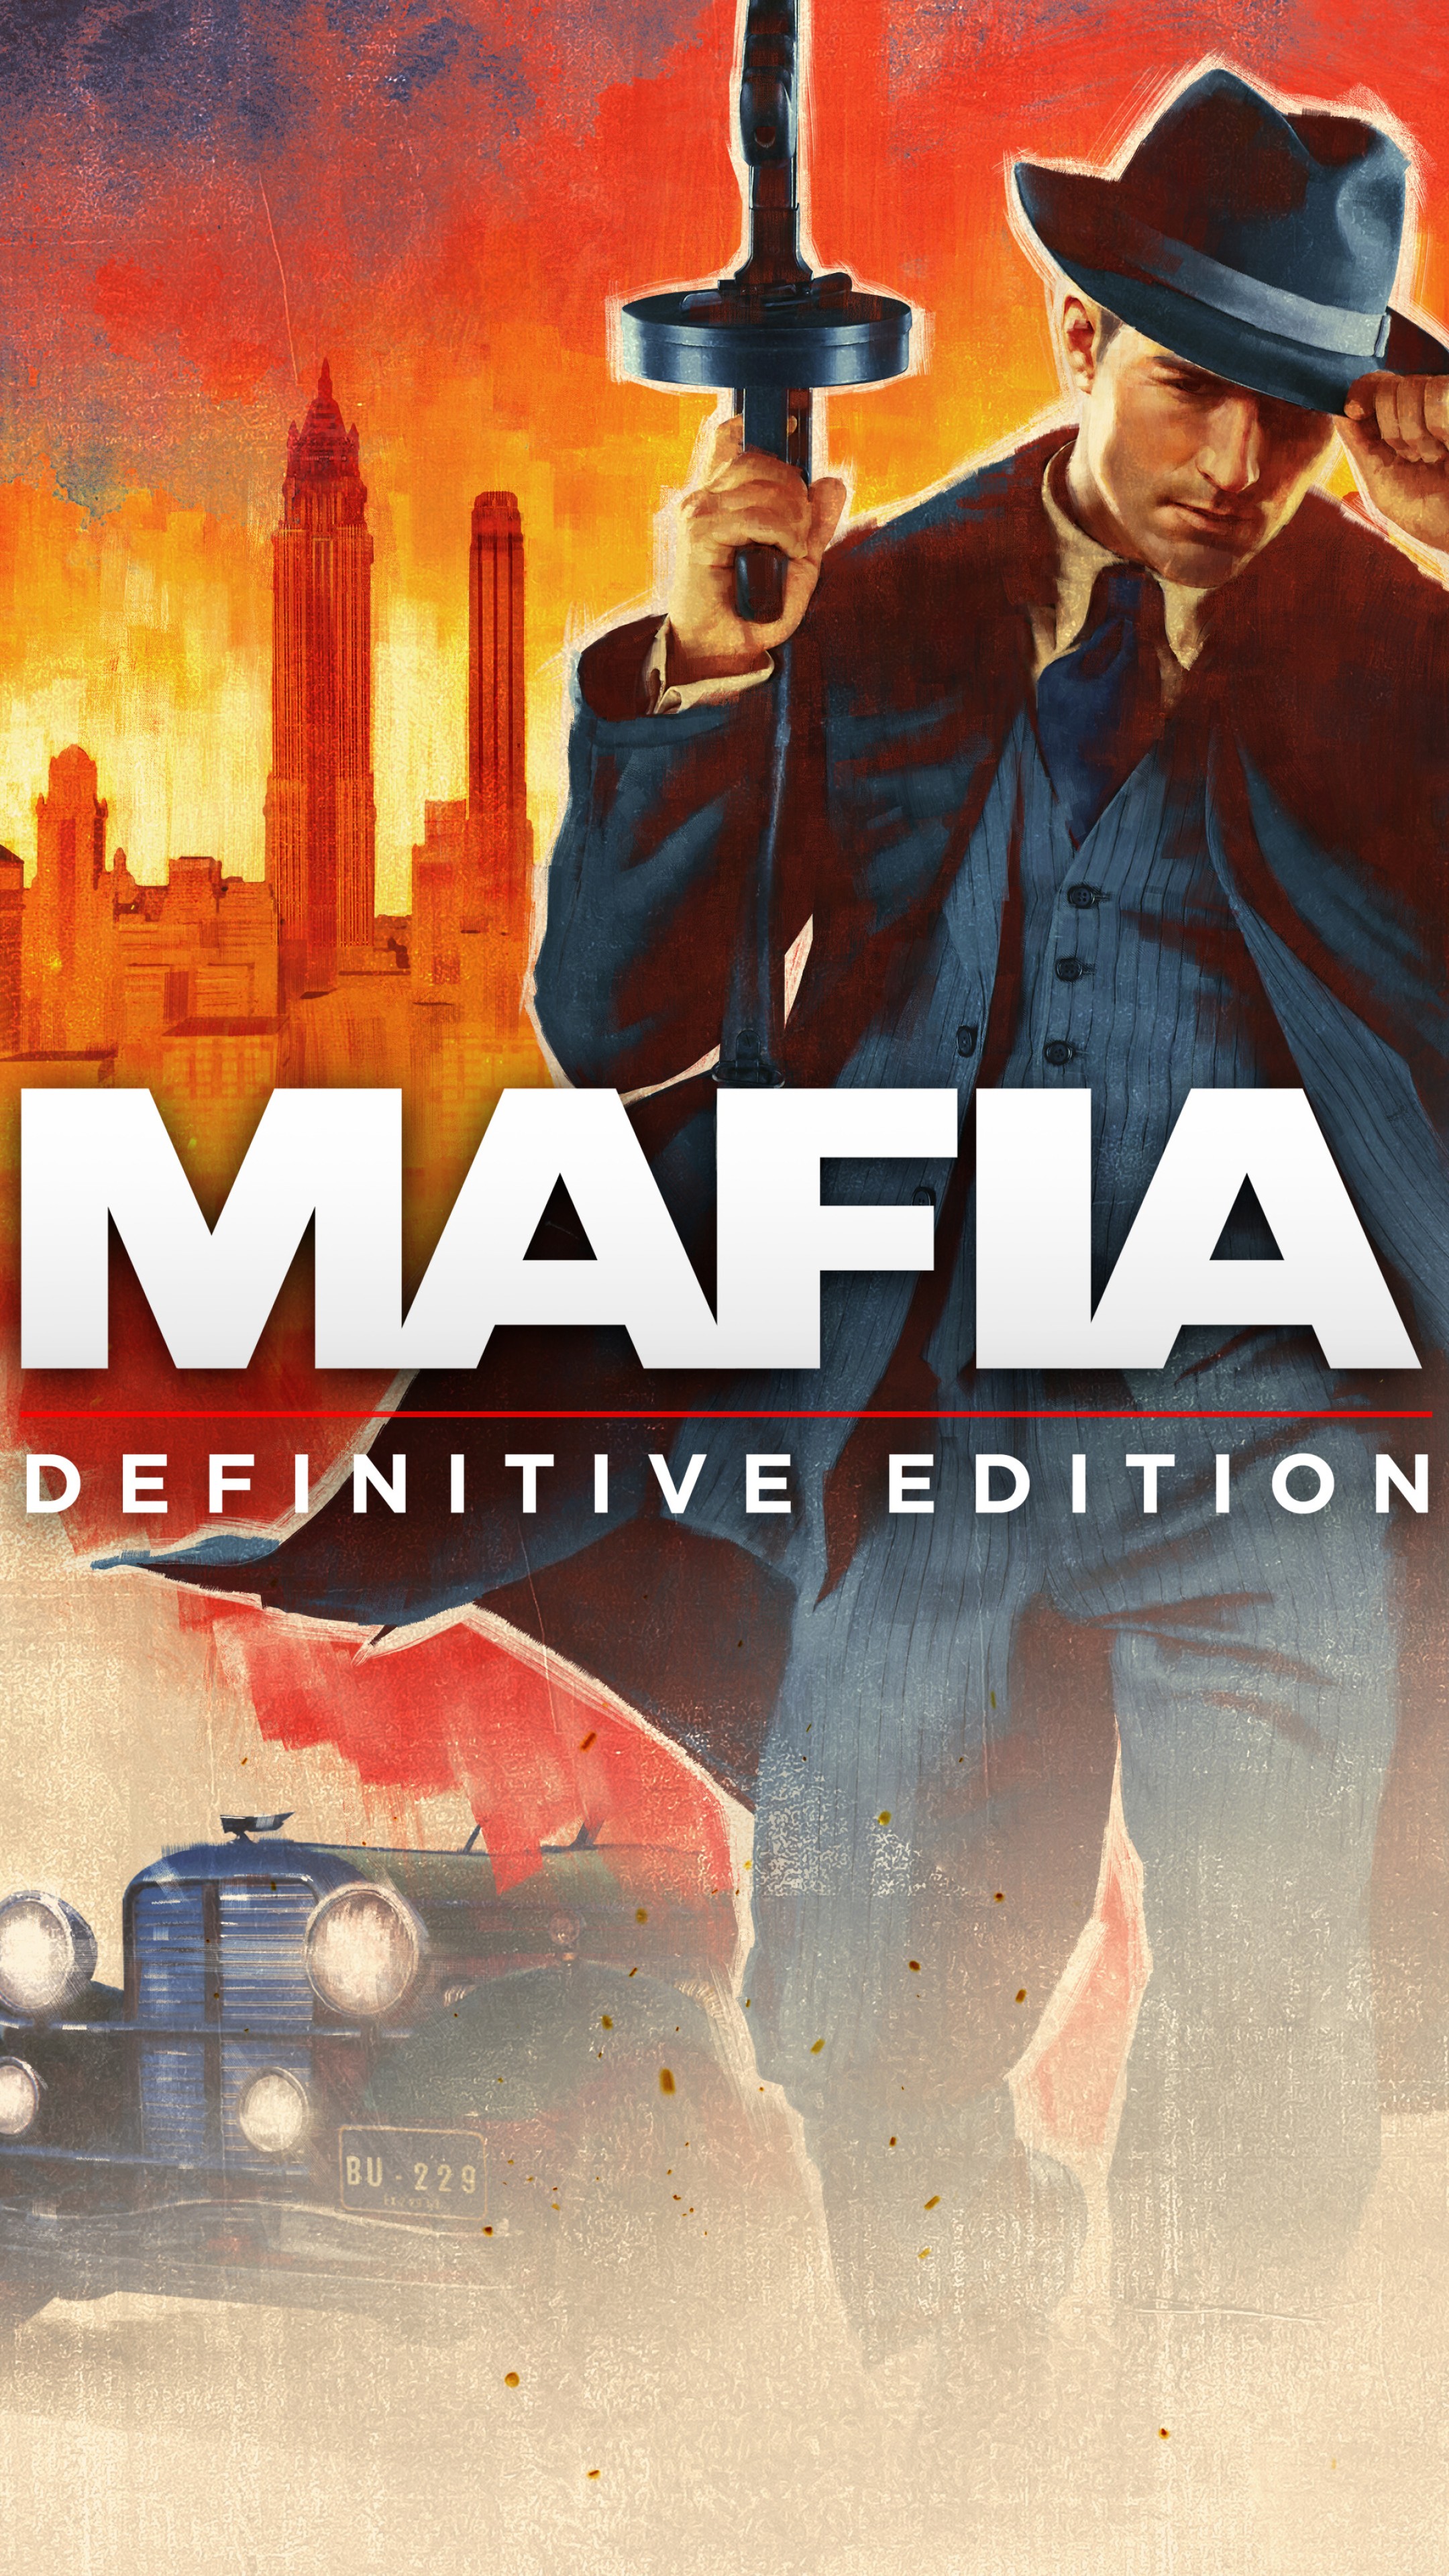 Mafia Definitive Edition Wallpaper 4K